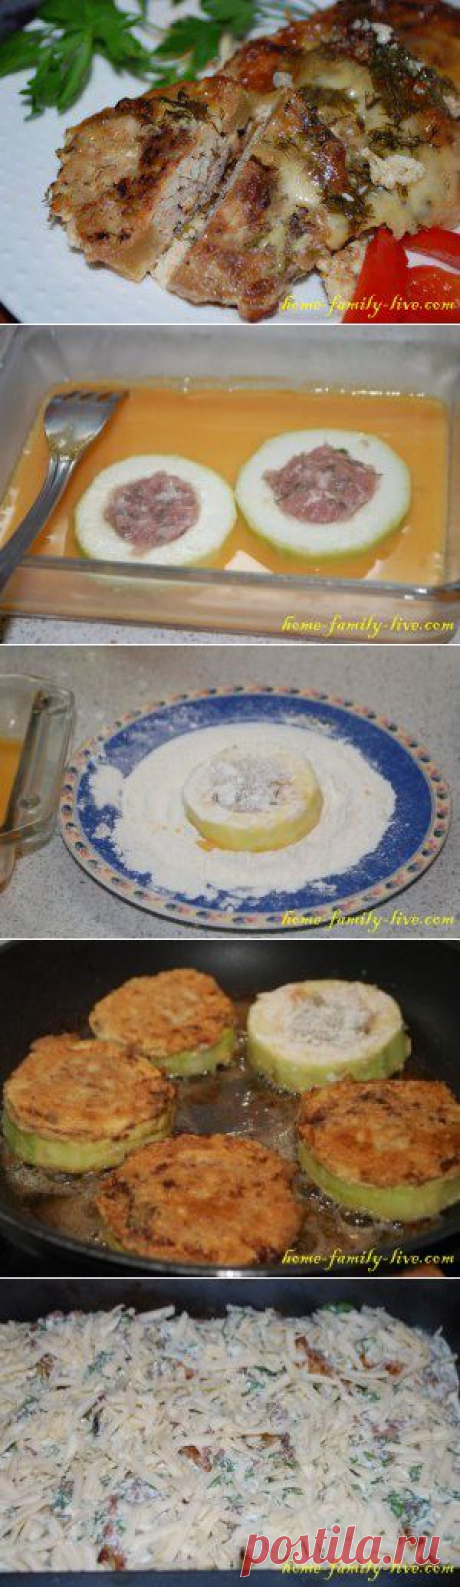 Кабачок фаршированный - пошаговый рецепт с фото